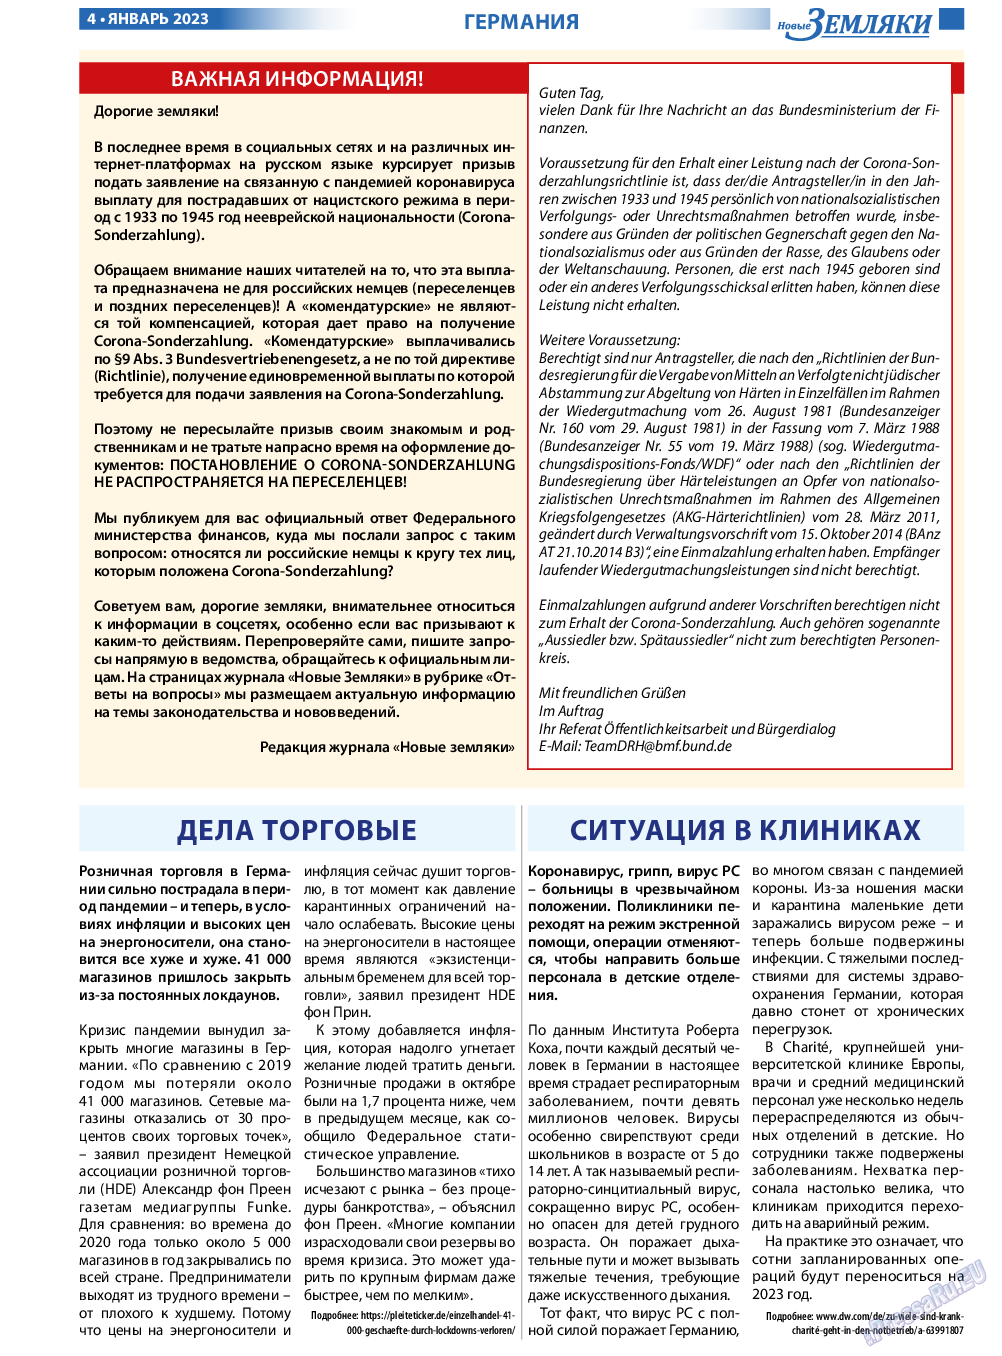 Новые Земляки, газета. 2023 №1 стр.4